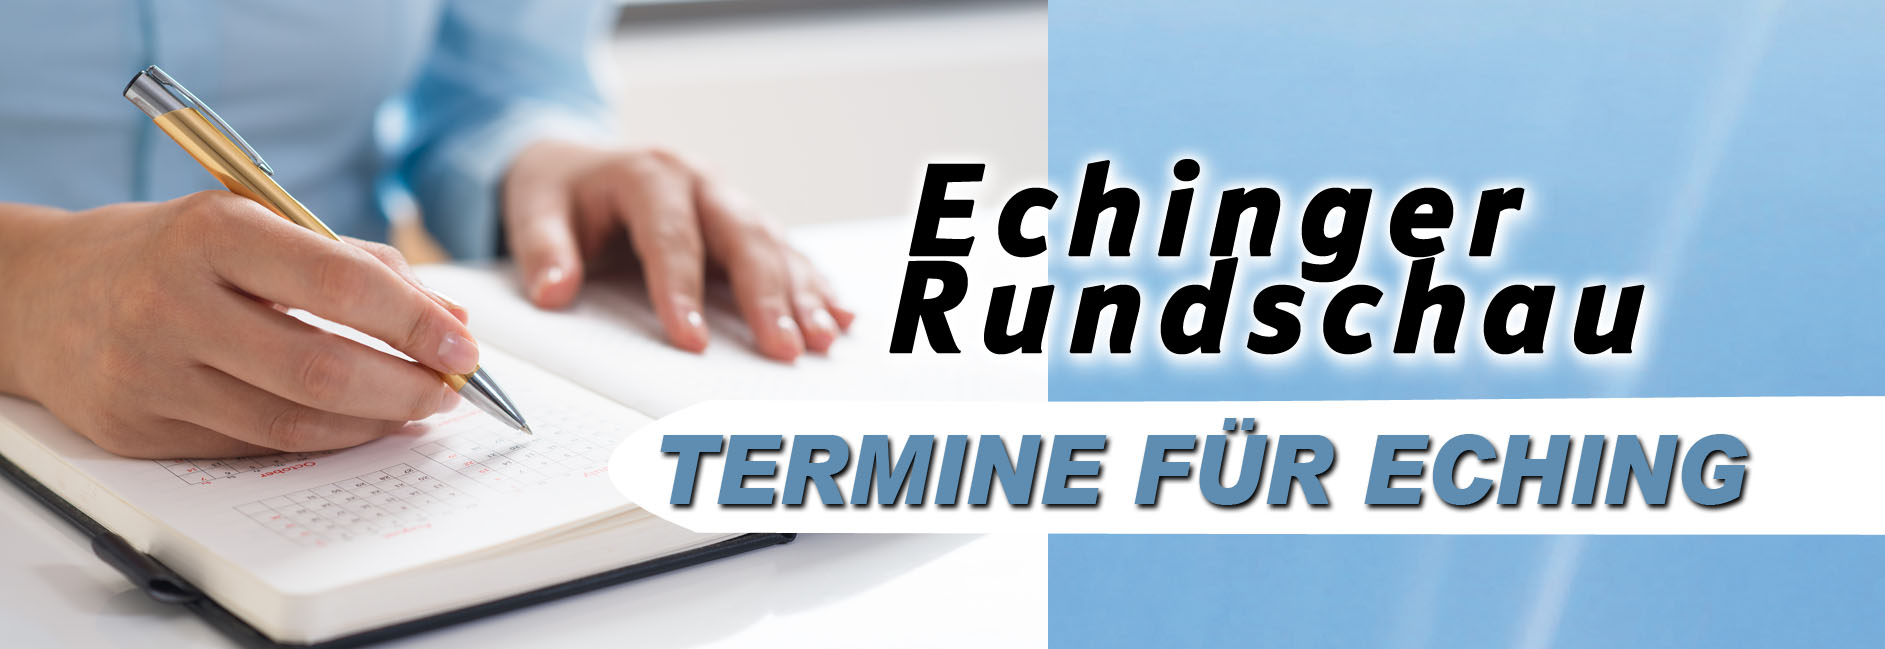 Echinger Rundschau Termine Eching